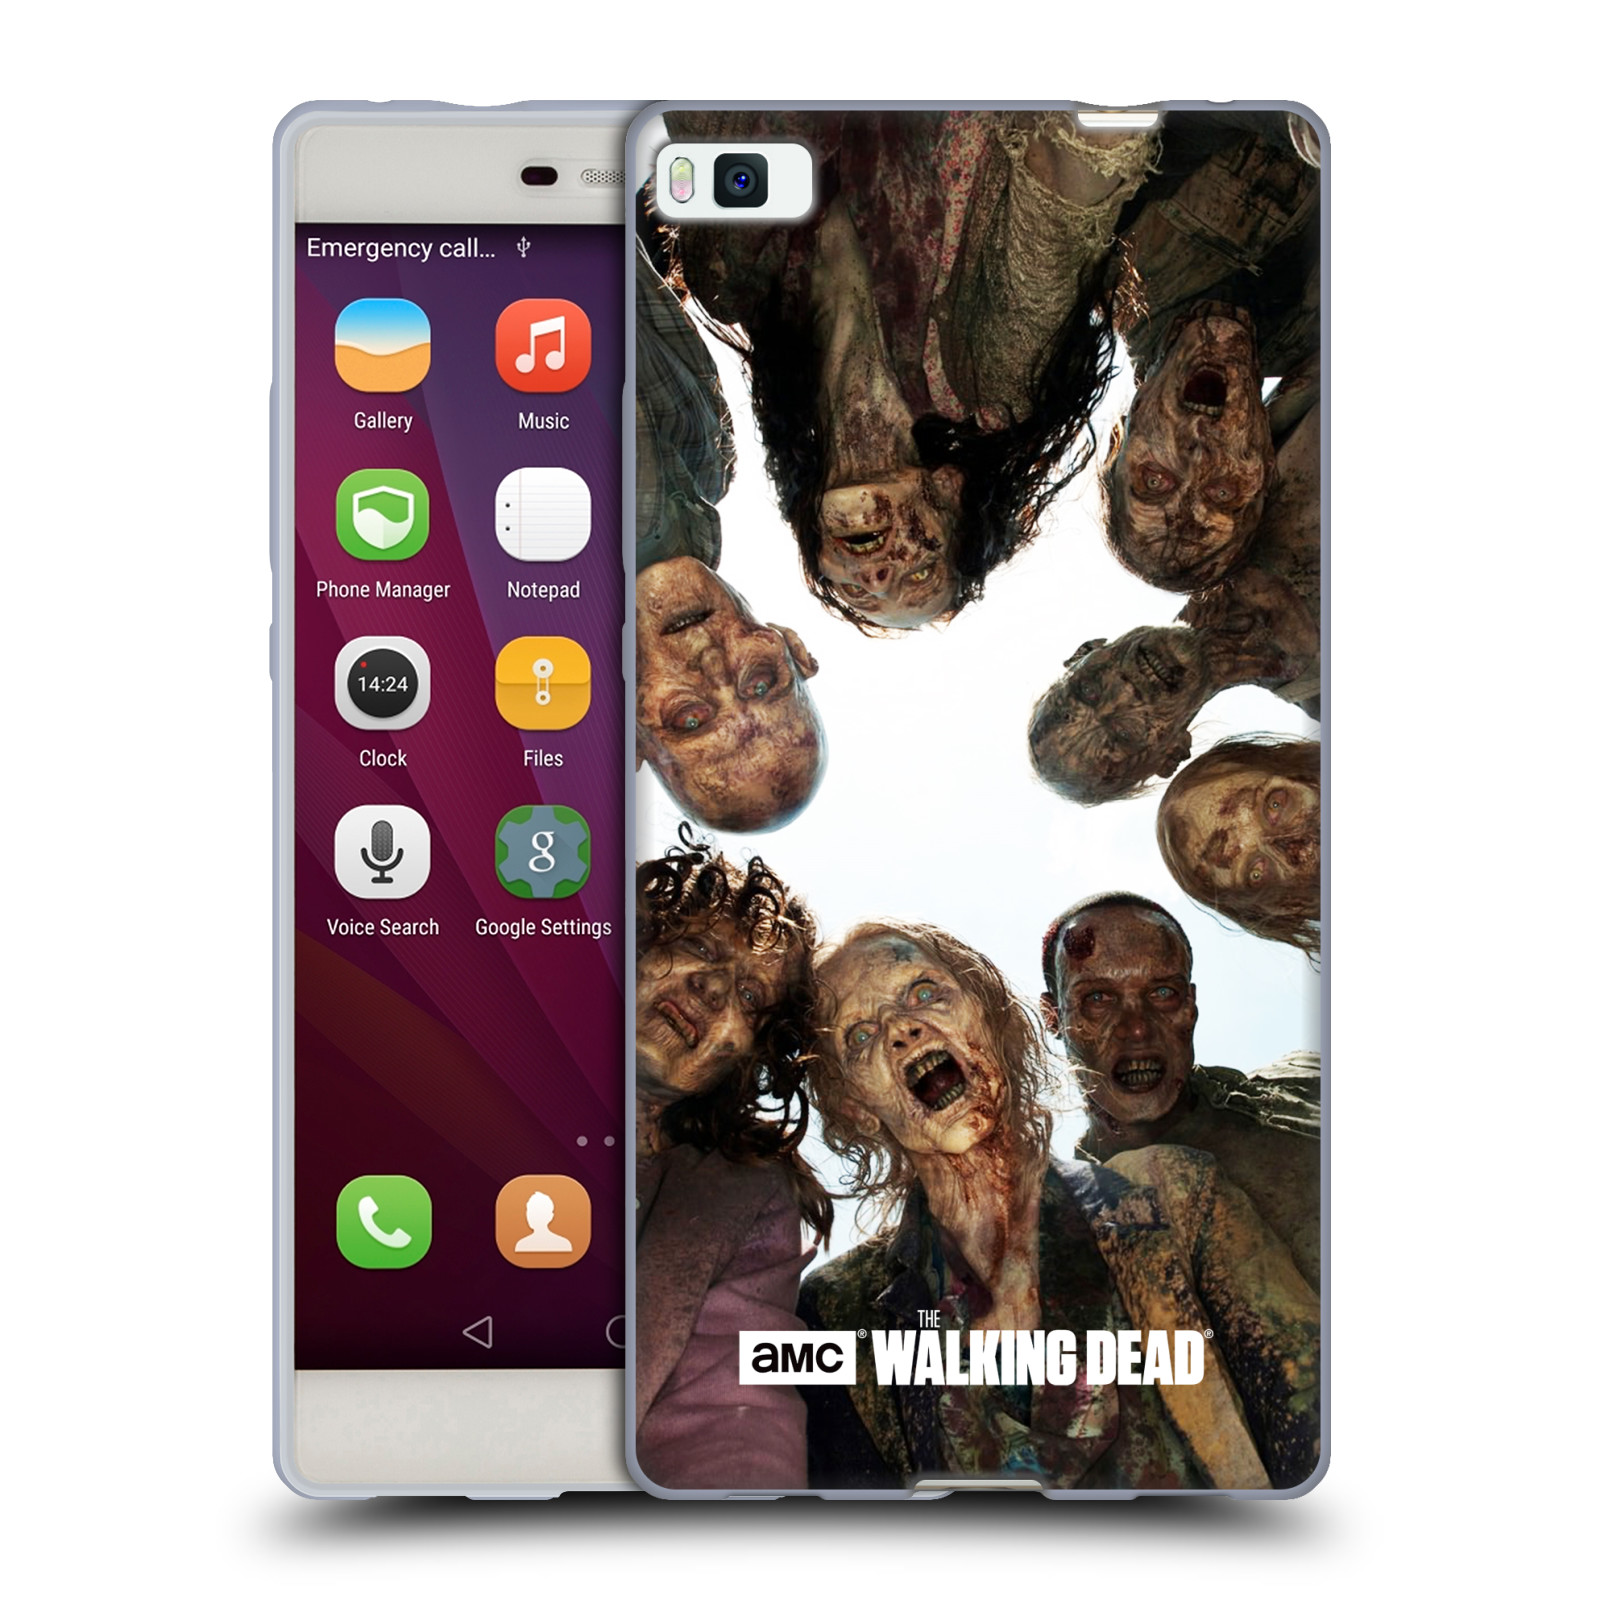 Silikonové pouzdro na mobil Huawei P8 HEAD CASE Živí mrtví - Walkers Group (Silikonový kryt či obal na mobilní telefon s licencovaným motivem Živí mrtví / The Walking Dead pro Huawei Ascend P8)